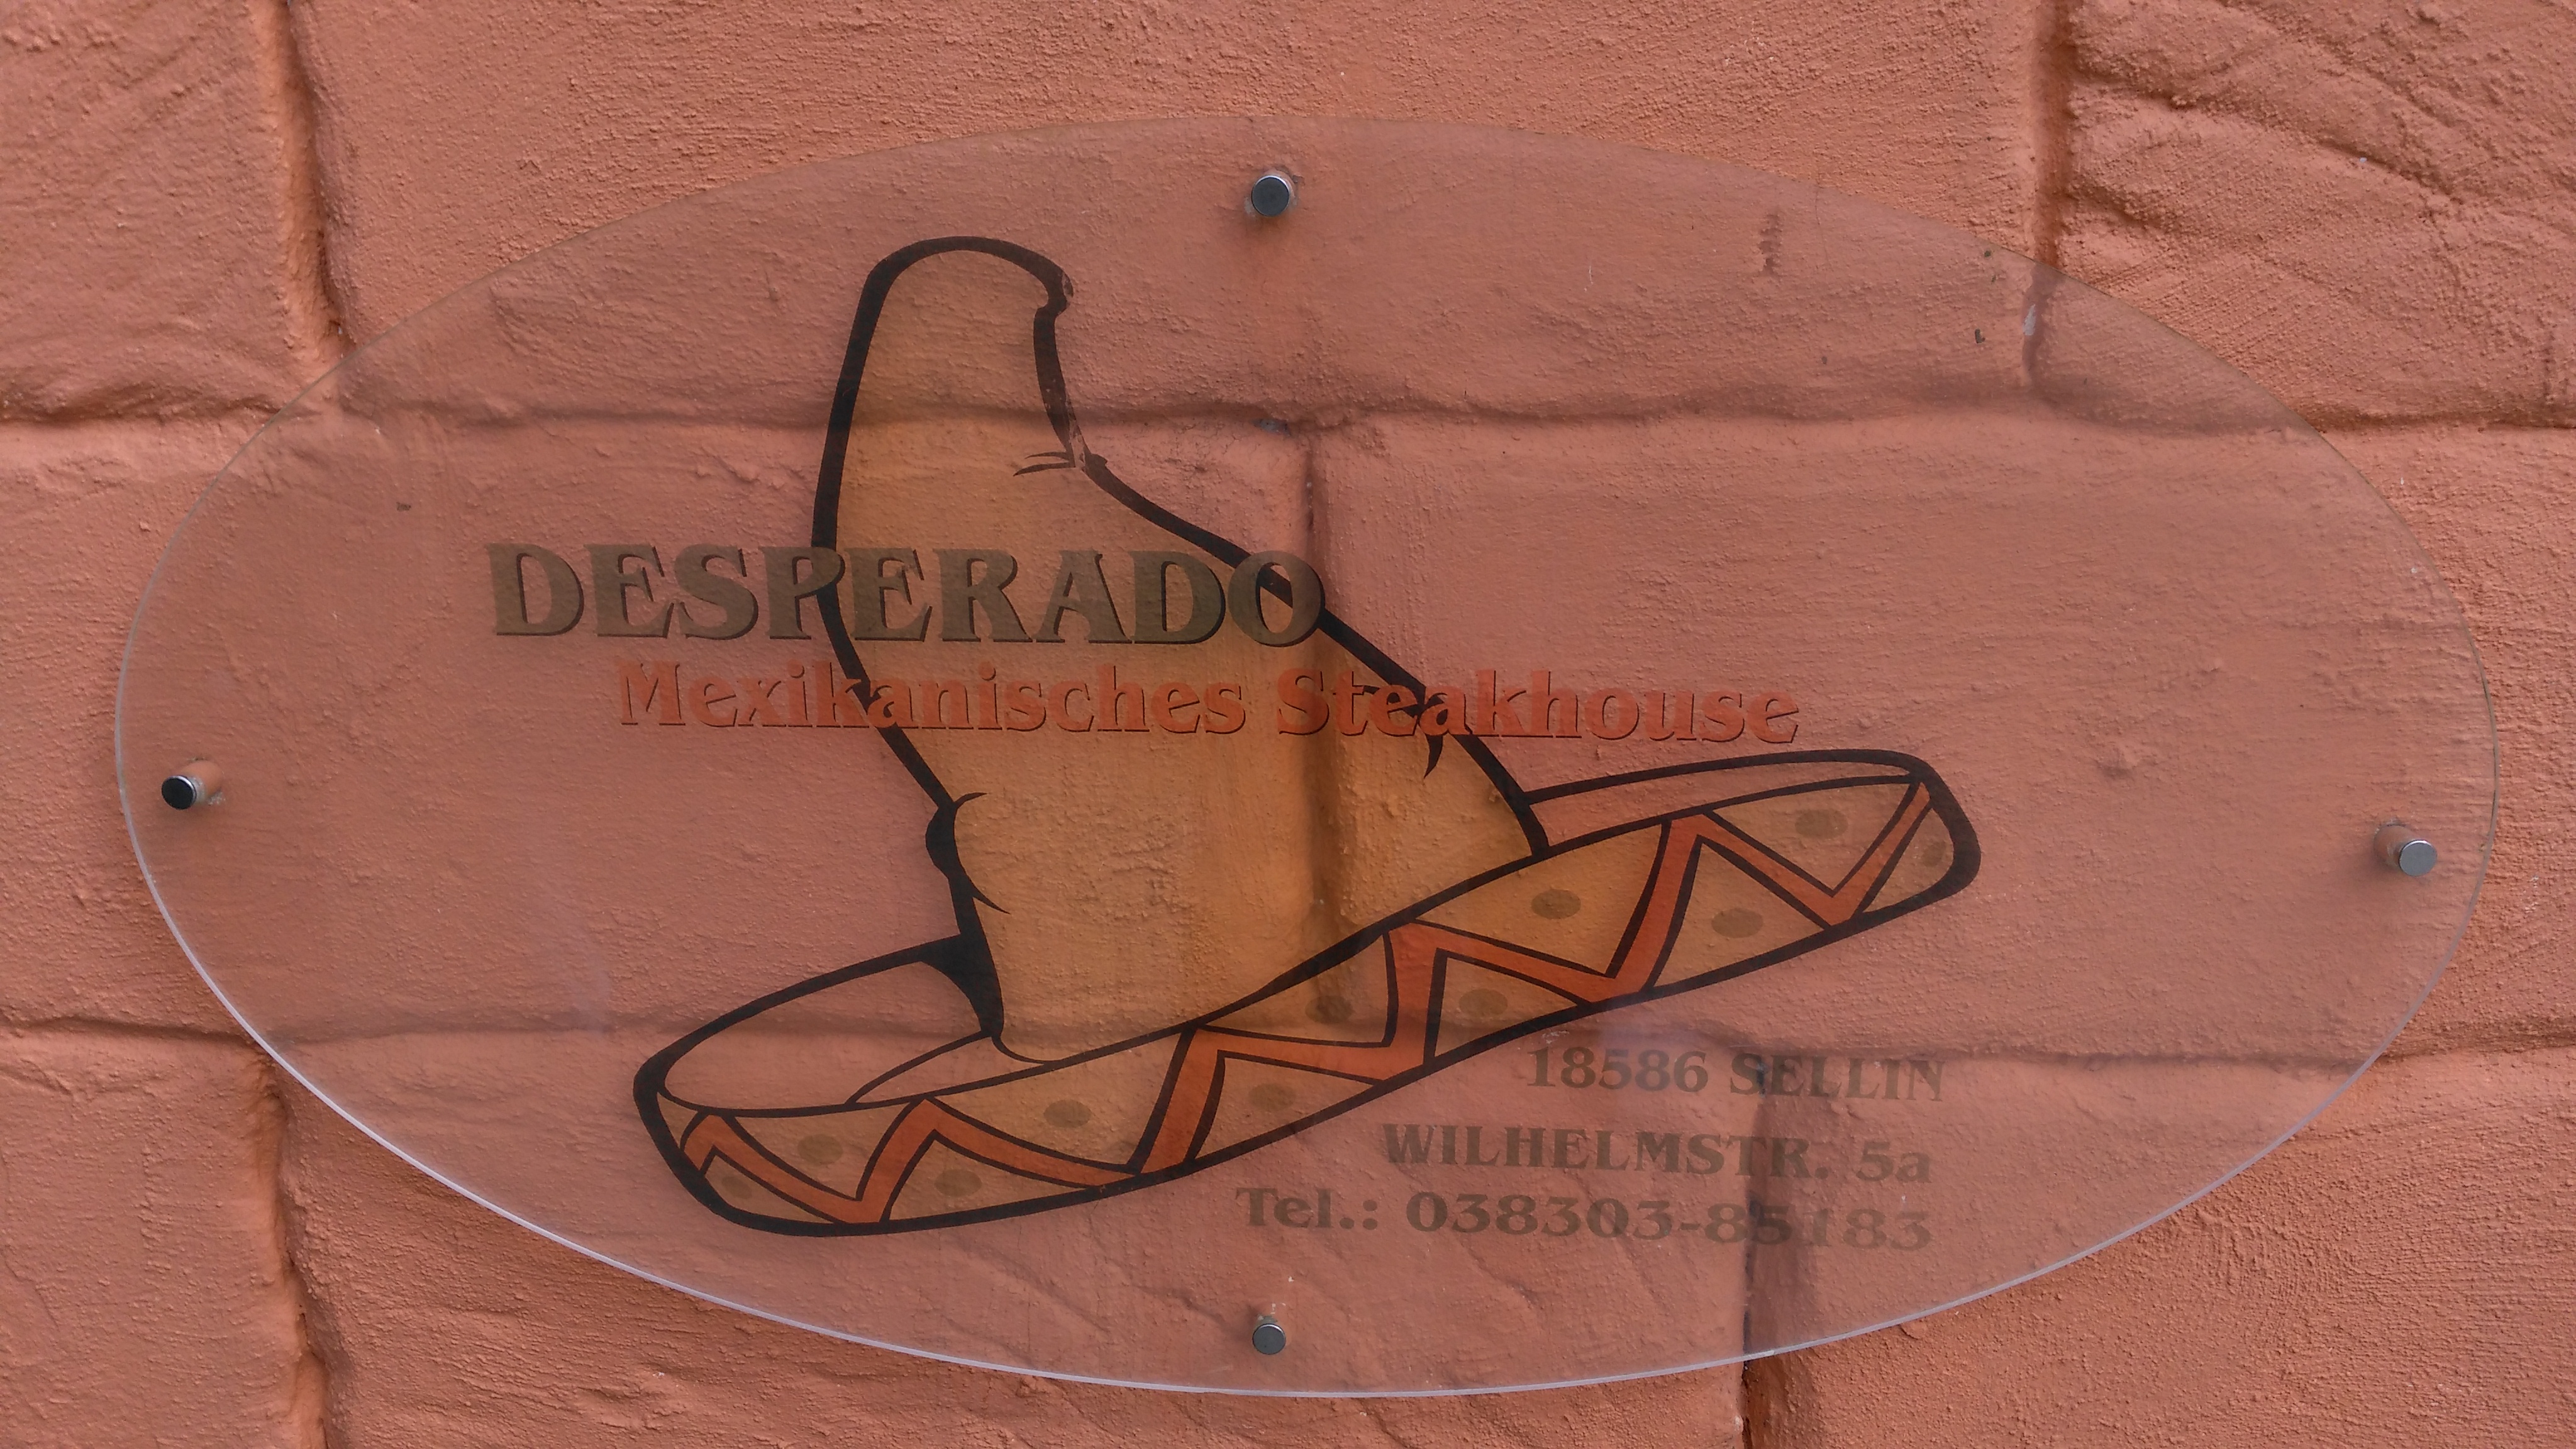 Desperado Mexikanisches Steakhouse - Logo